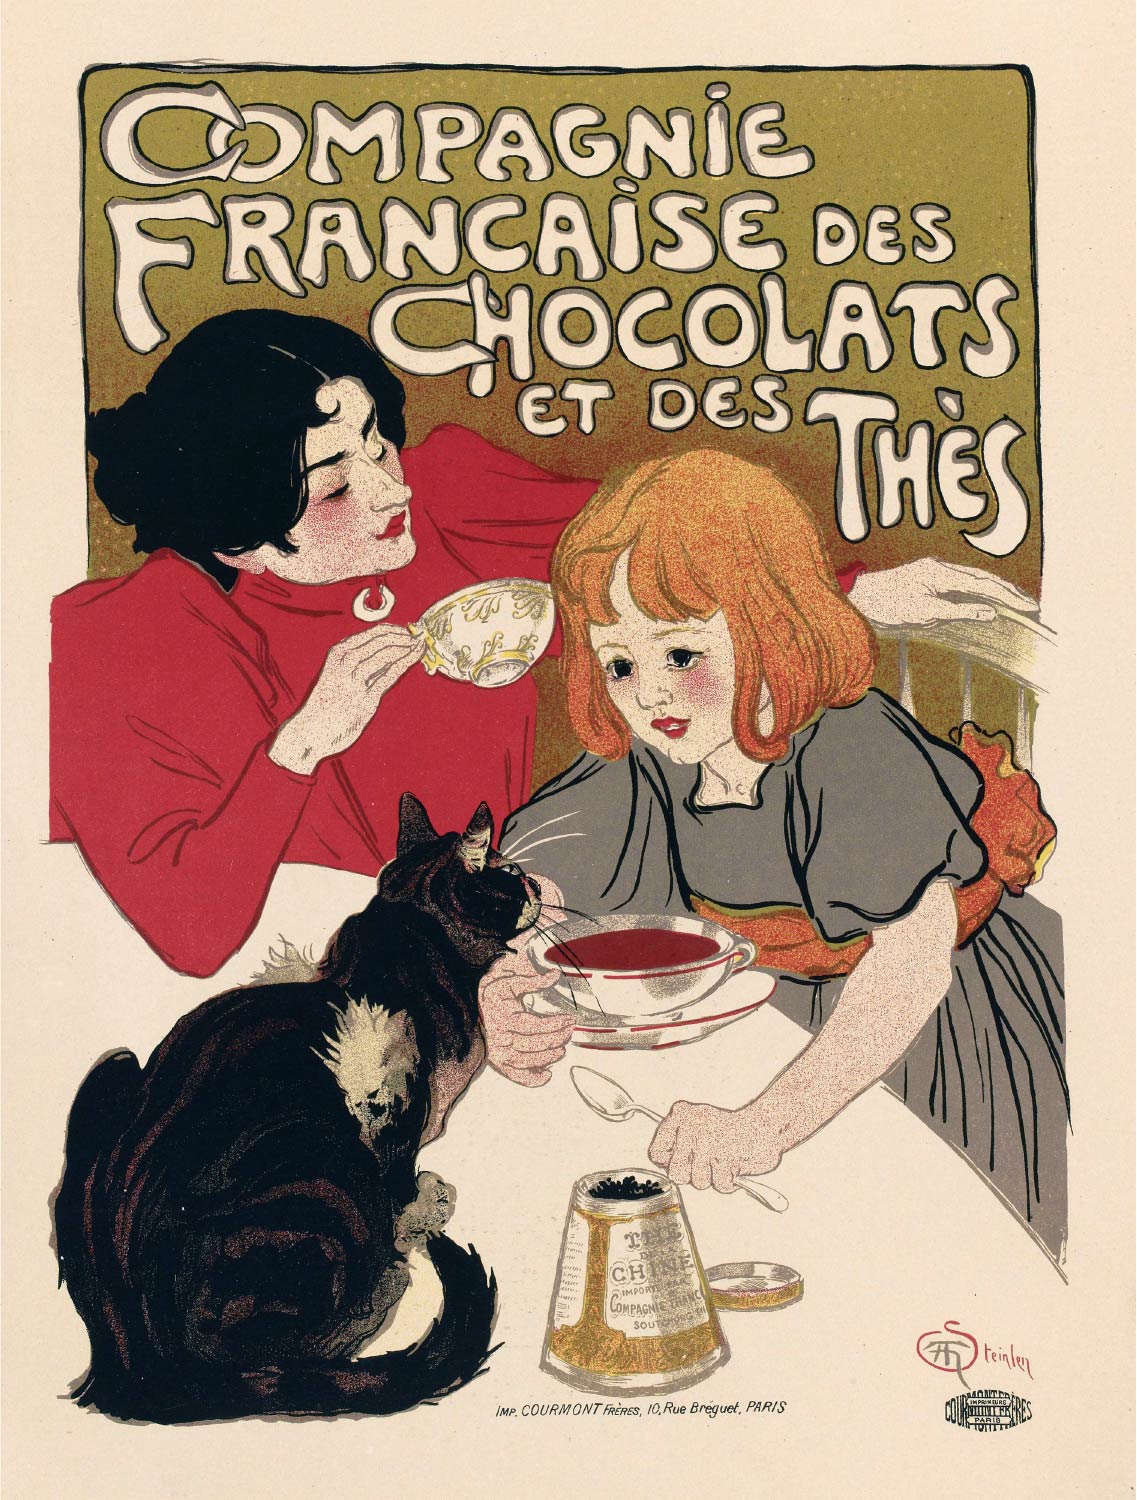 【無料壁紙】アレクサンドル・スタンラン「カンパニー・フランセーズ・デ・ショコラ (1895)」 / Alexandre Steinlen_Compagnie Française des Chocolats et des Thés (1895)